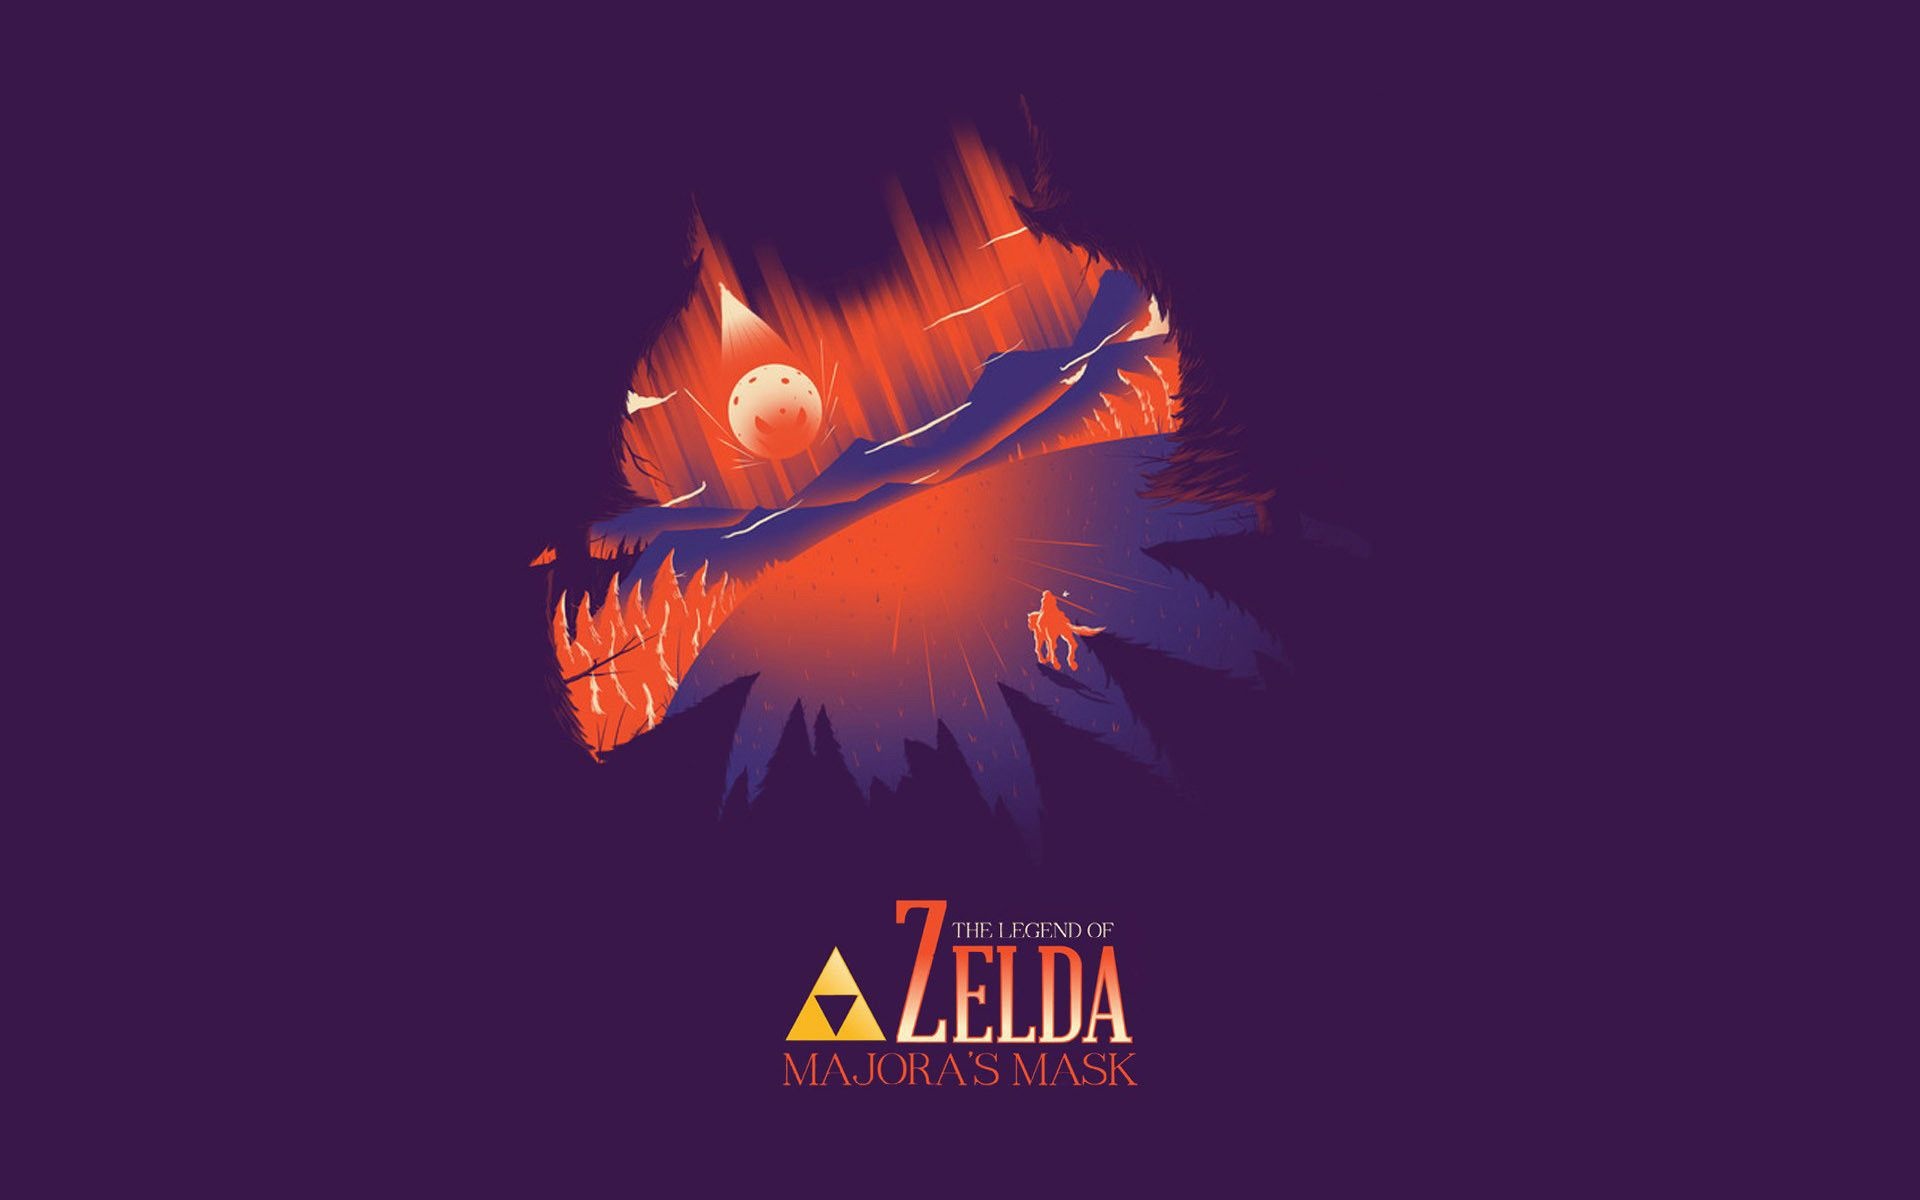 Legend of Zelda, Majora's Mask wallpapers, Top free backgrounds, 1920x1200 HD Desktop